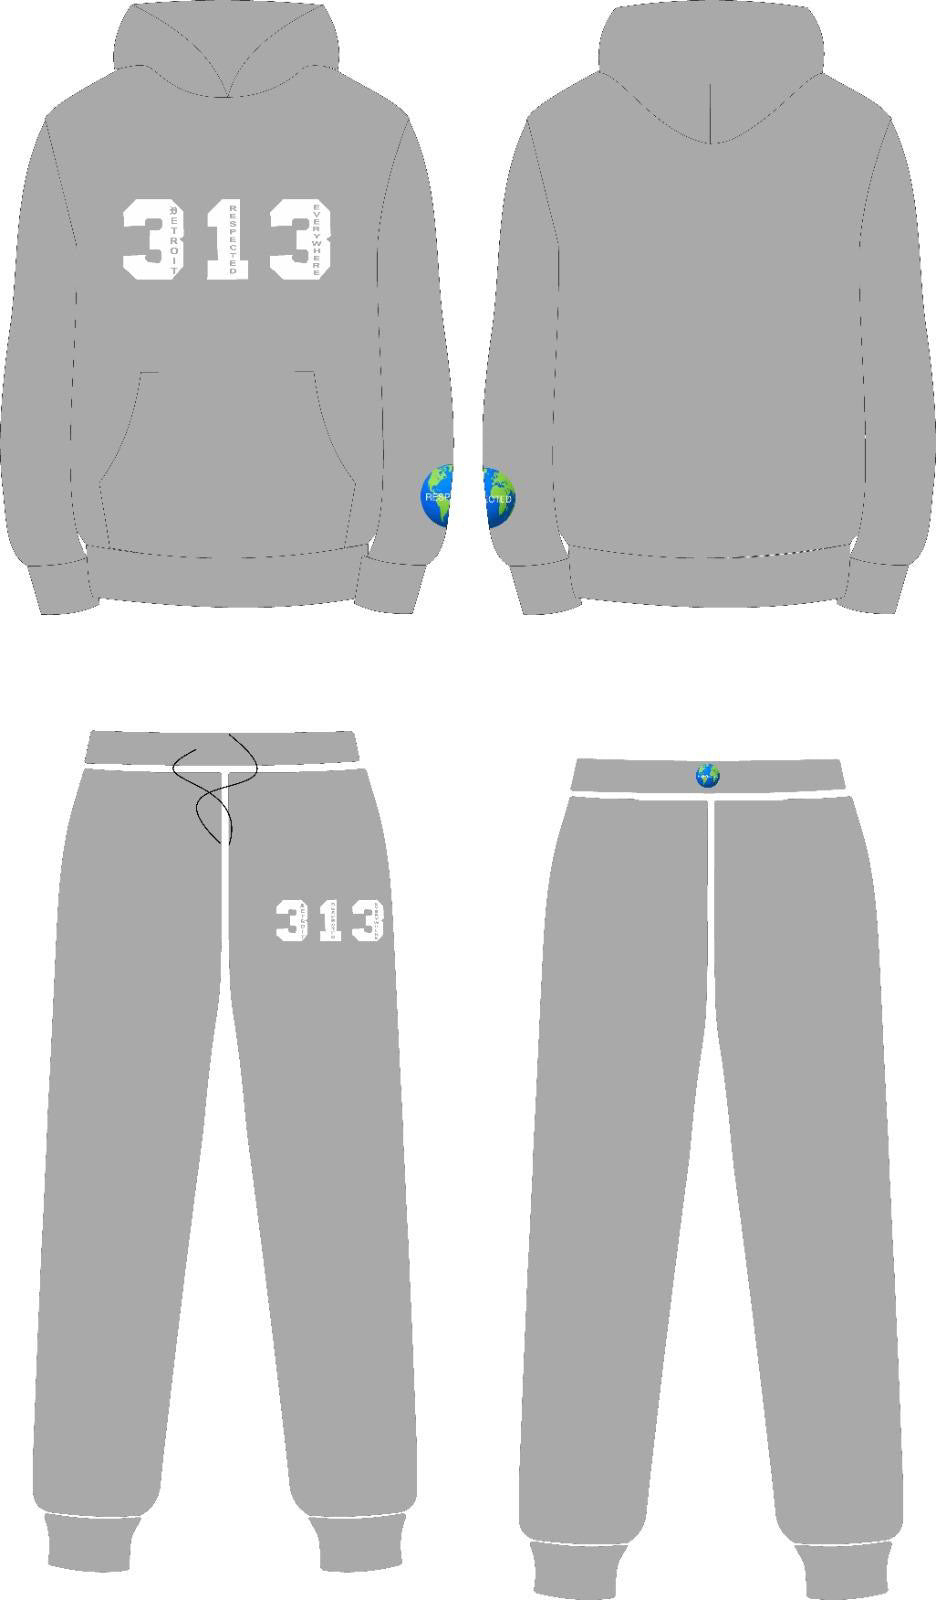 313 DRE Hoodie (Gray w/ White) Tshirt or Hoodie or Pants